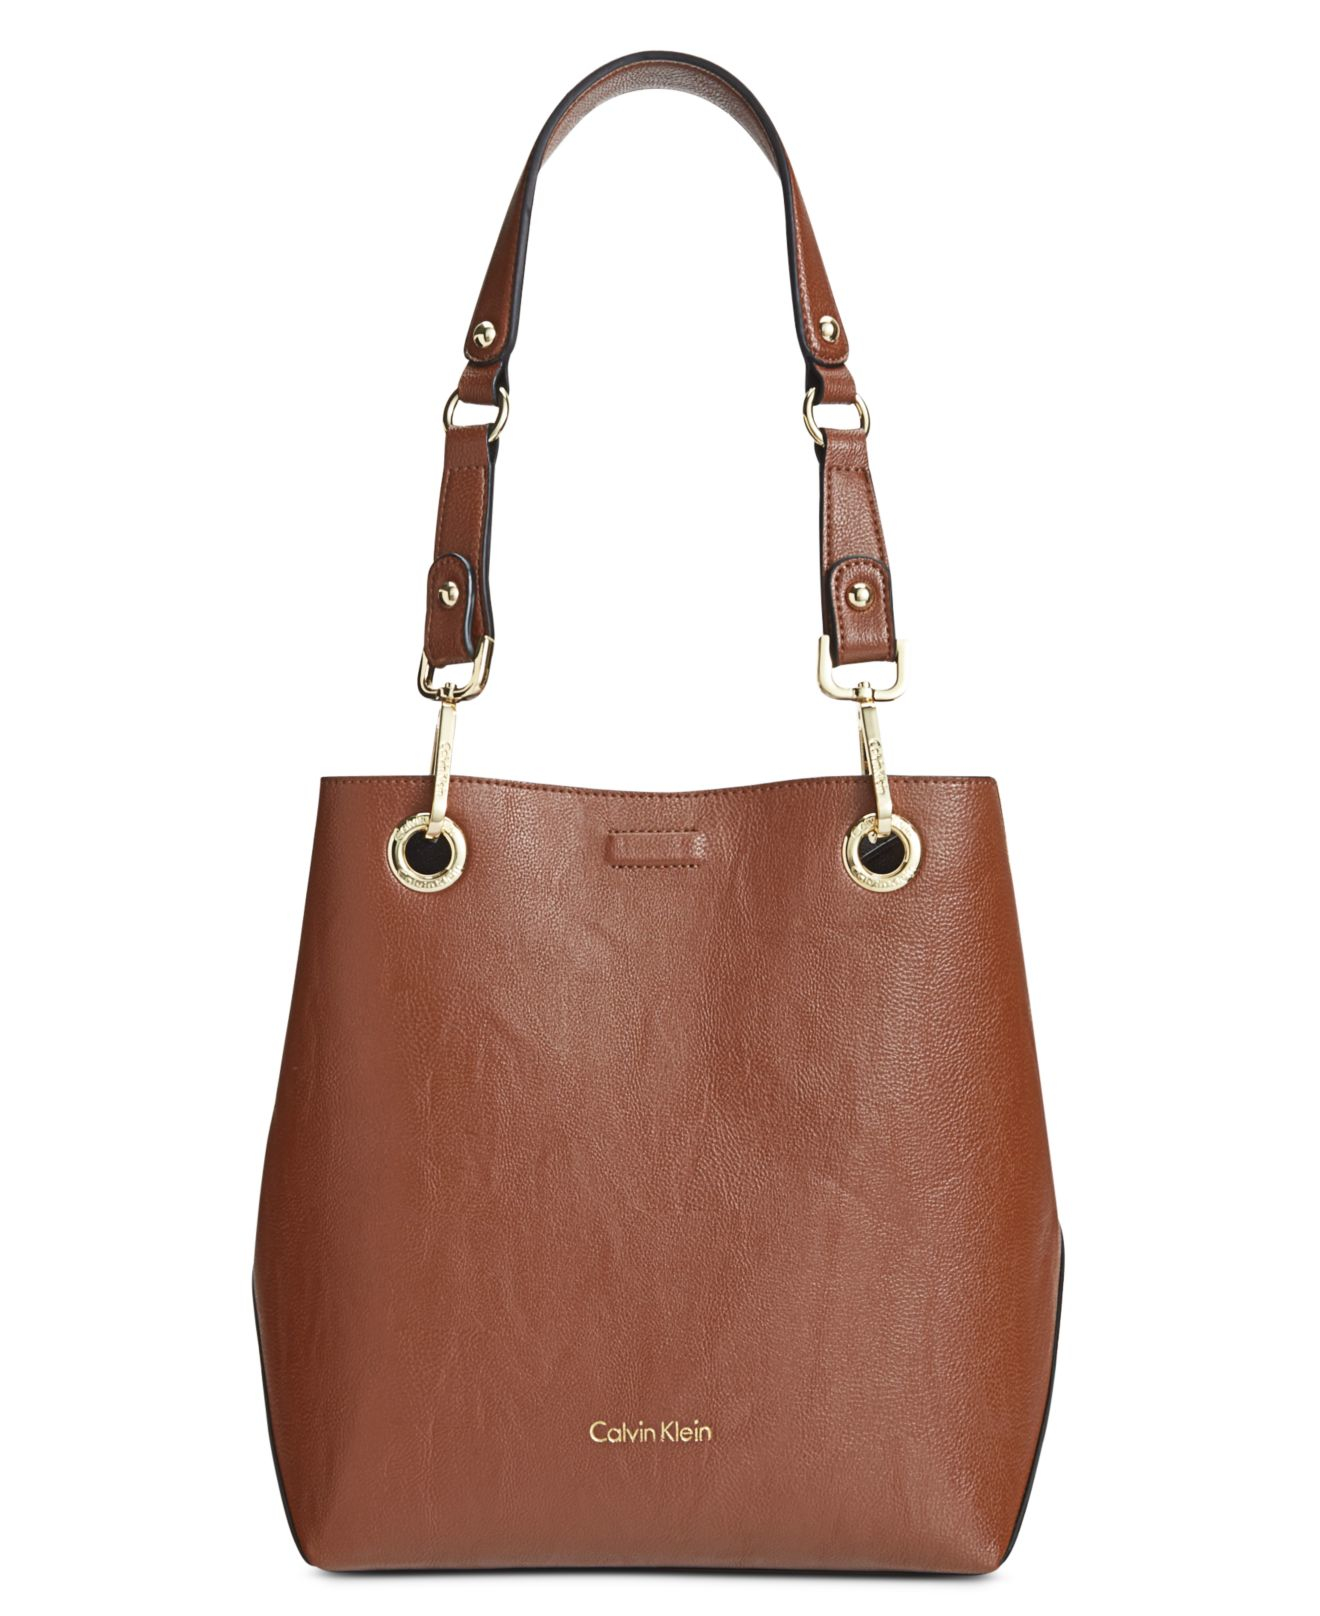 Calvin klein Reversible Bag-in-bag Tote in Brown (Luggage/Black) | Lyst